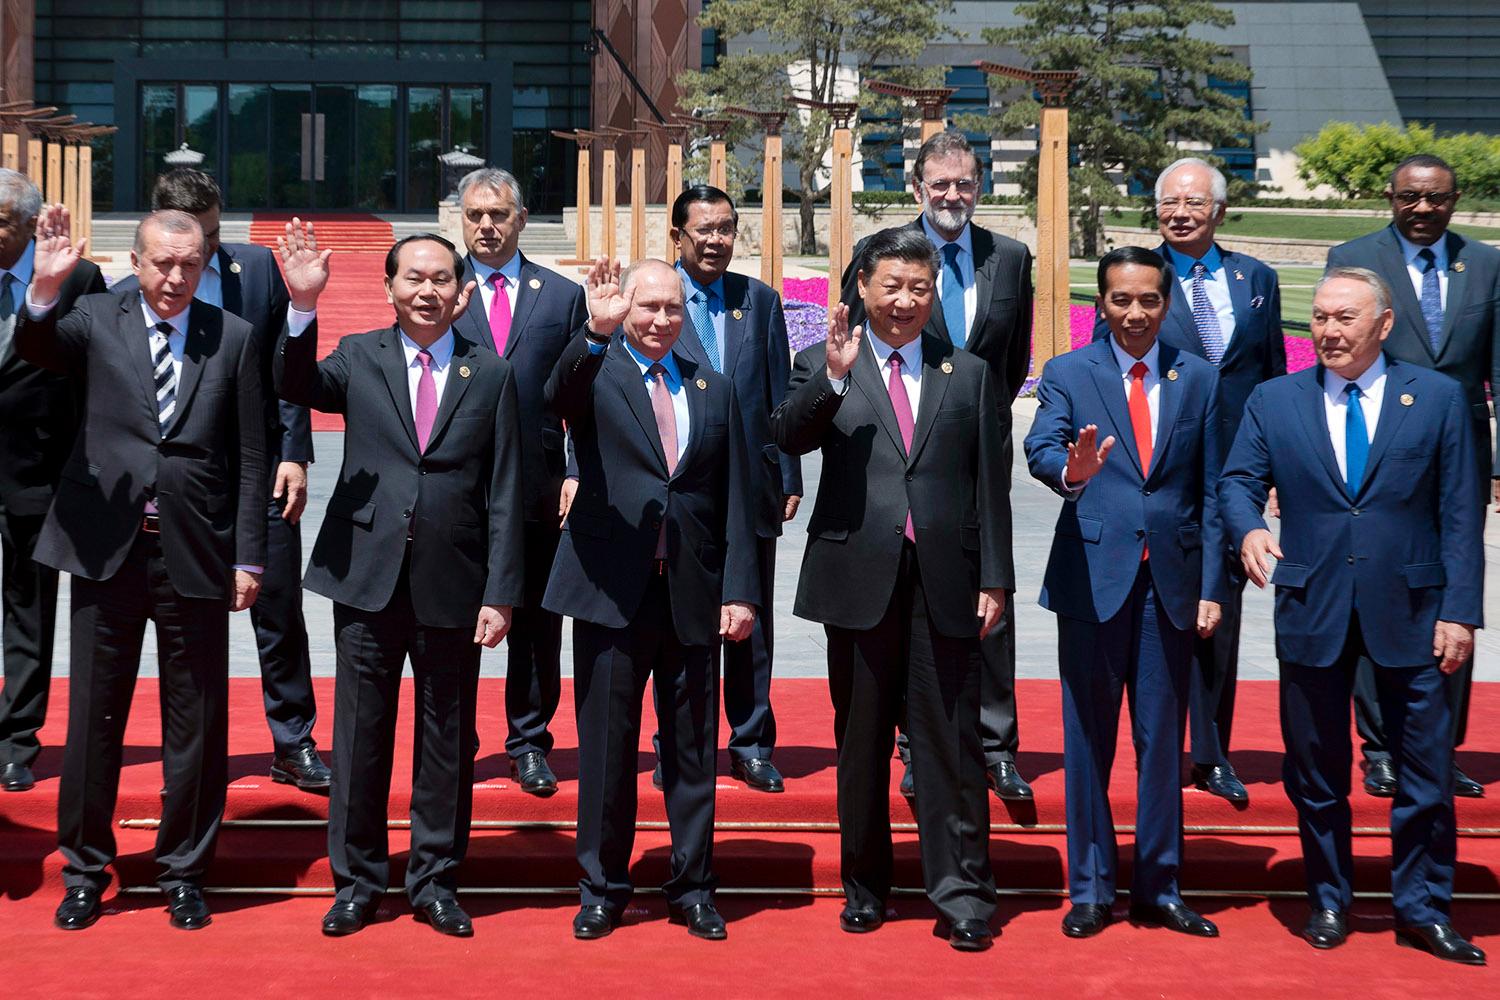 Kinas president Xi Jinping tillsammans med Vladimir Putin, Recep Tayyip Erdoğan och andra ledare.